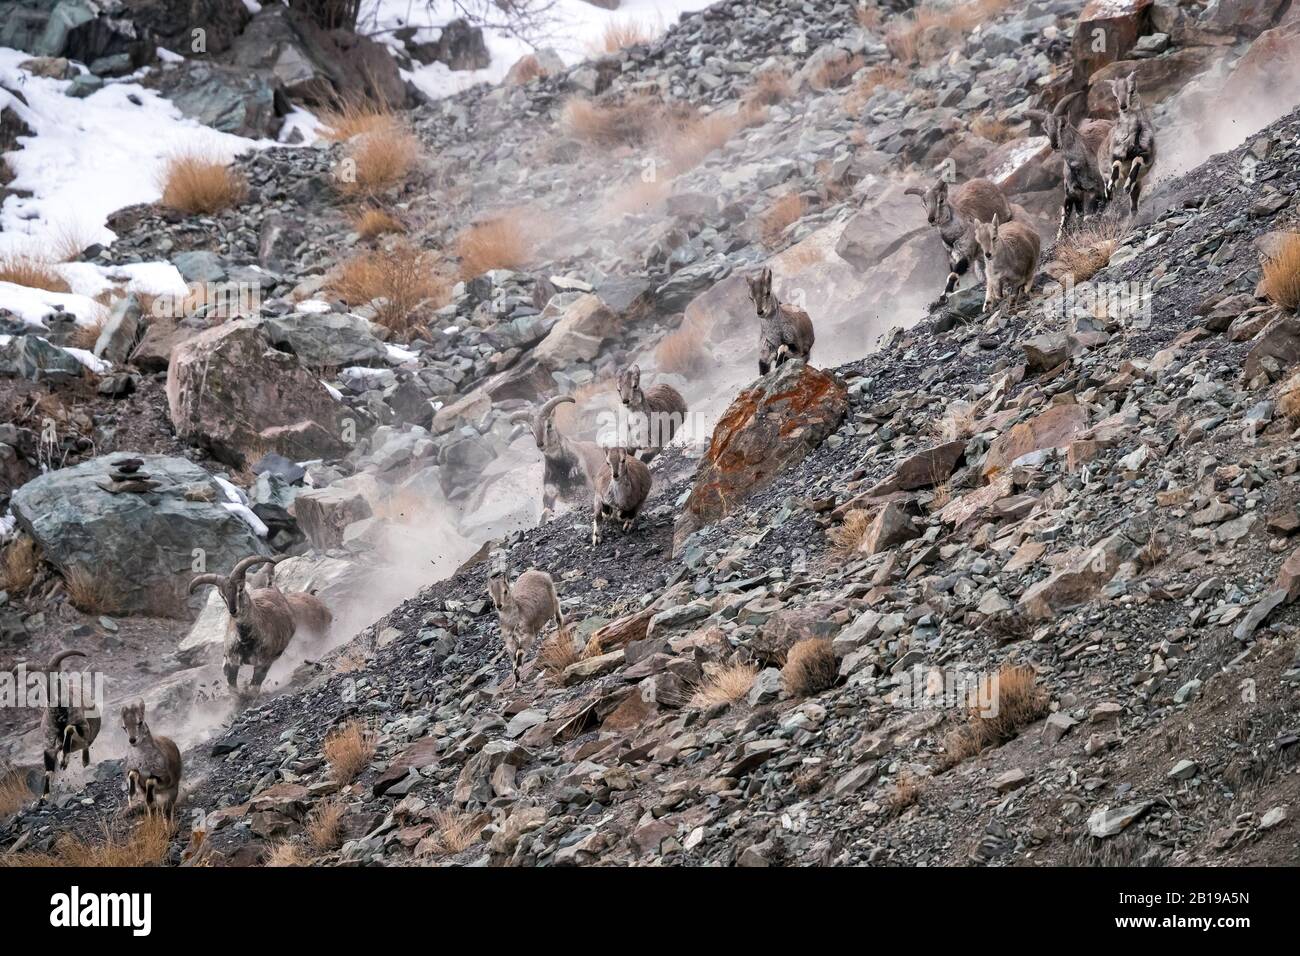 Bharal, mouton bleu himalayenne, naur (Pseudois nayaur), troupeau chassé par Snow Leopard dans la vallée de Rumbak, Inde, Ladakh Banque D'Images